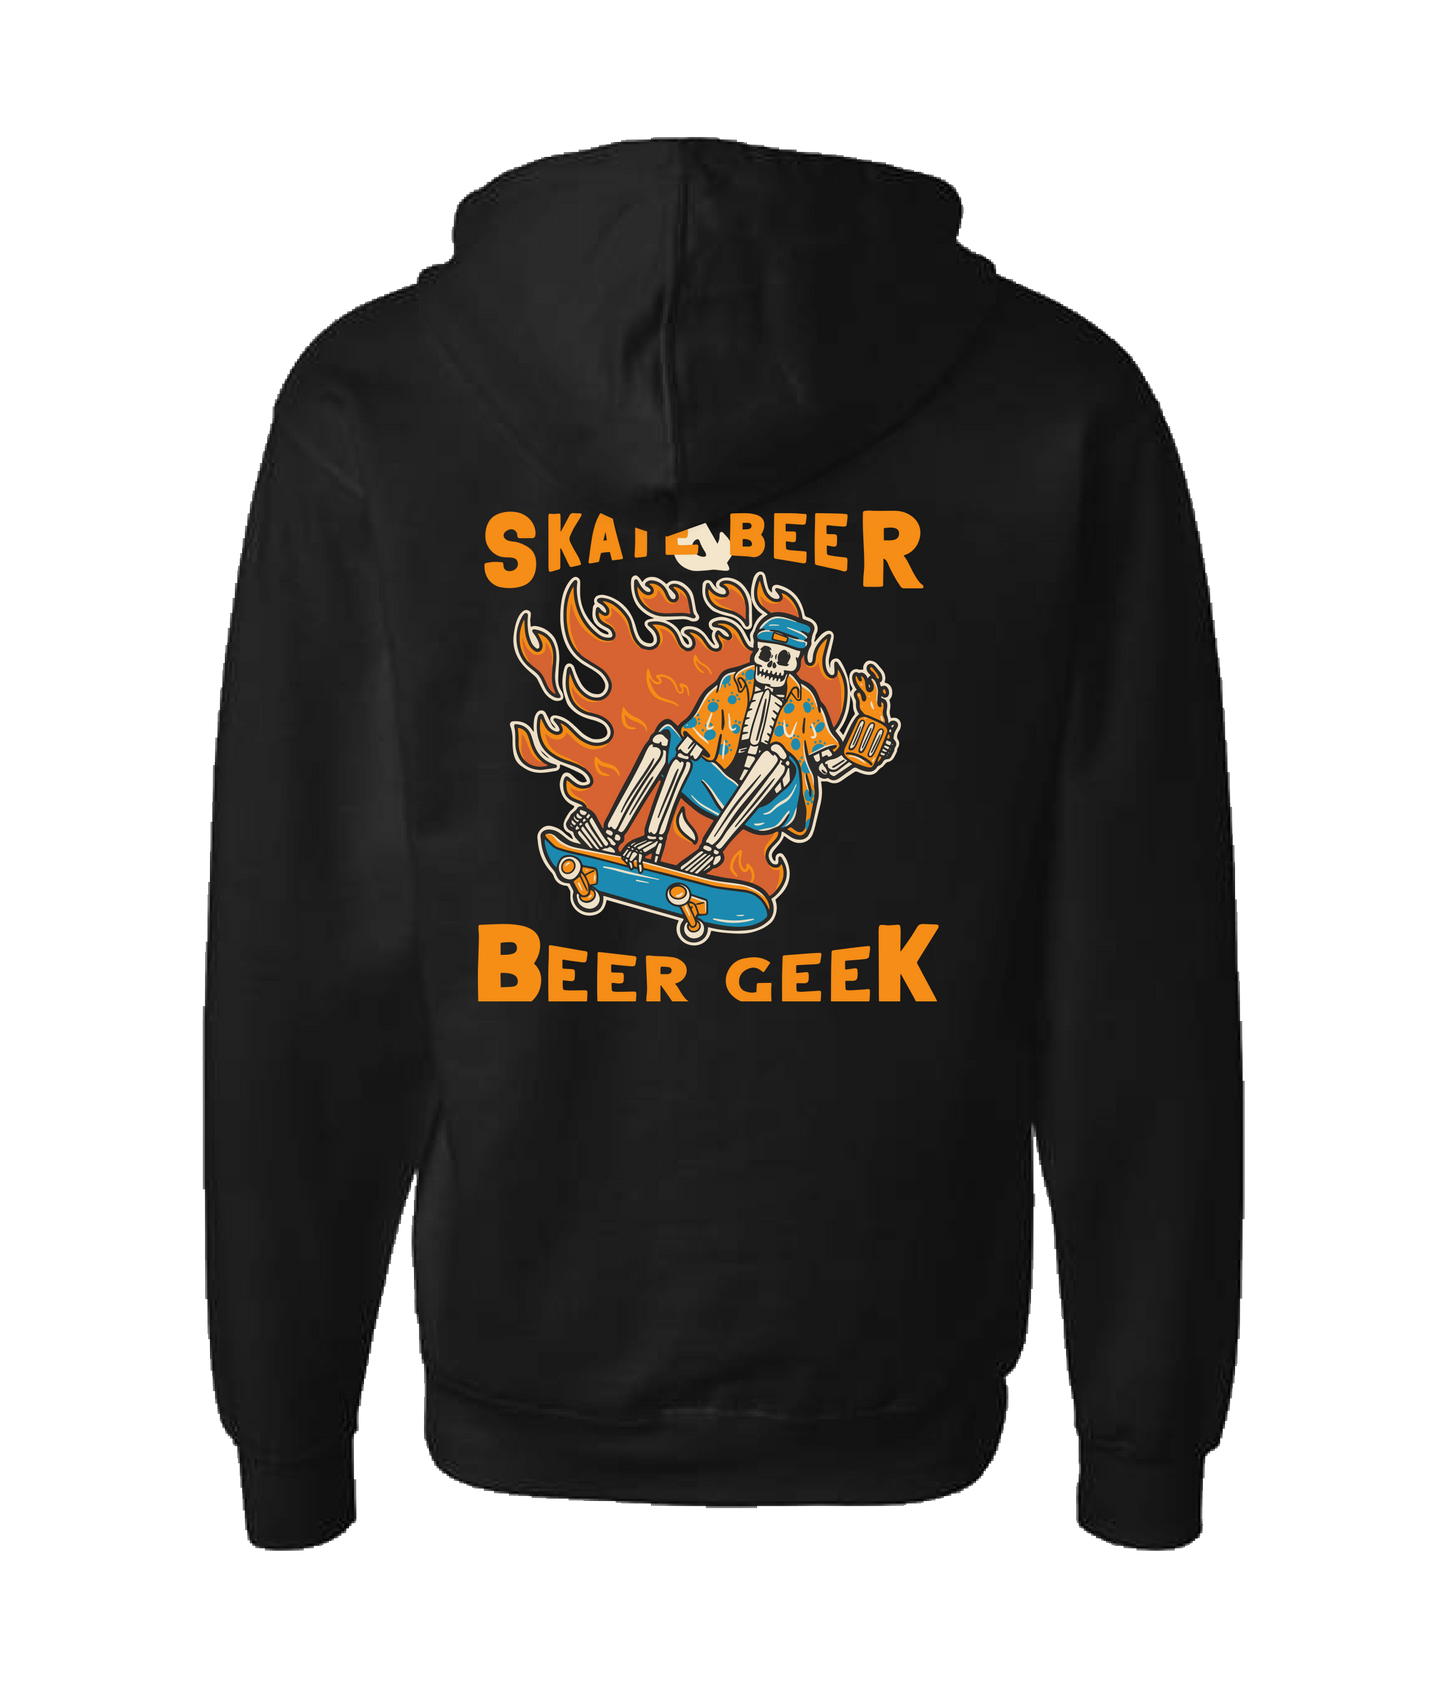 Beer Geek - Skate Beer Logo - Black Zip Up Hoodie